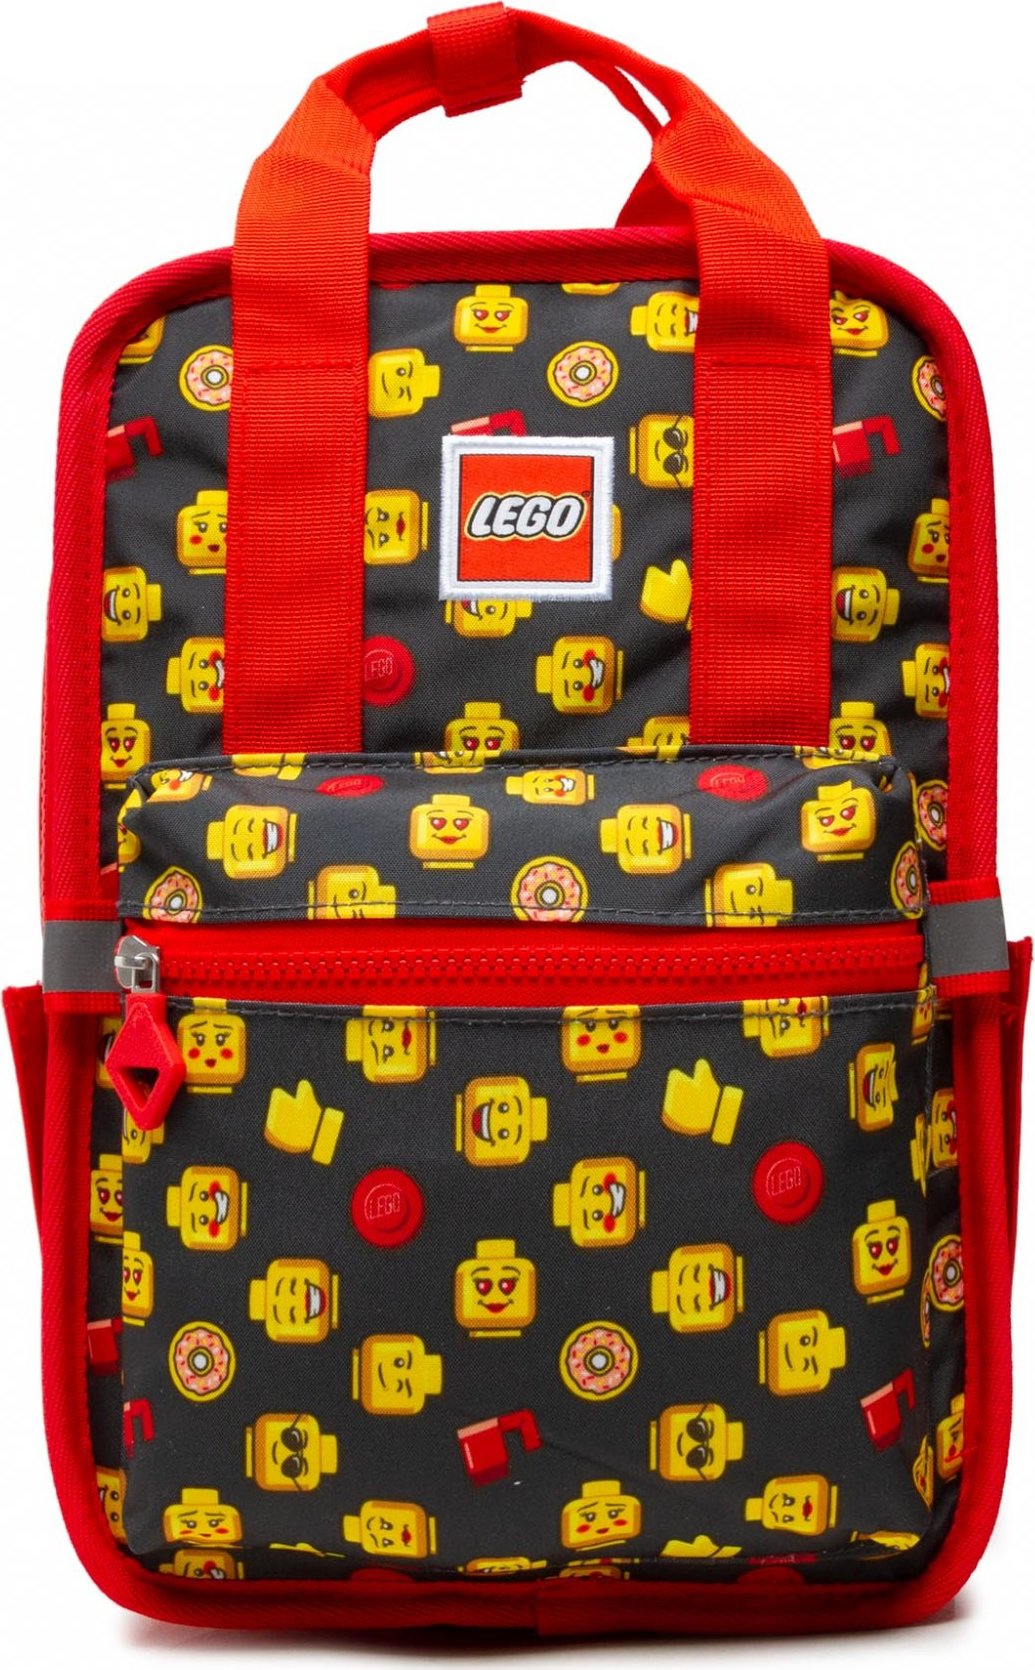 LEGO Tribini Fun Backpack Small 20127-1932